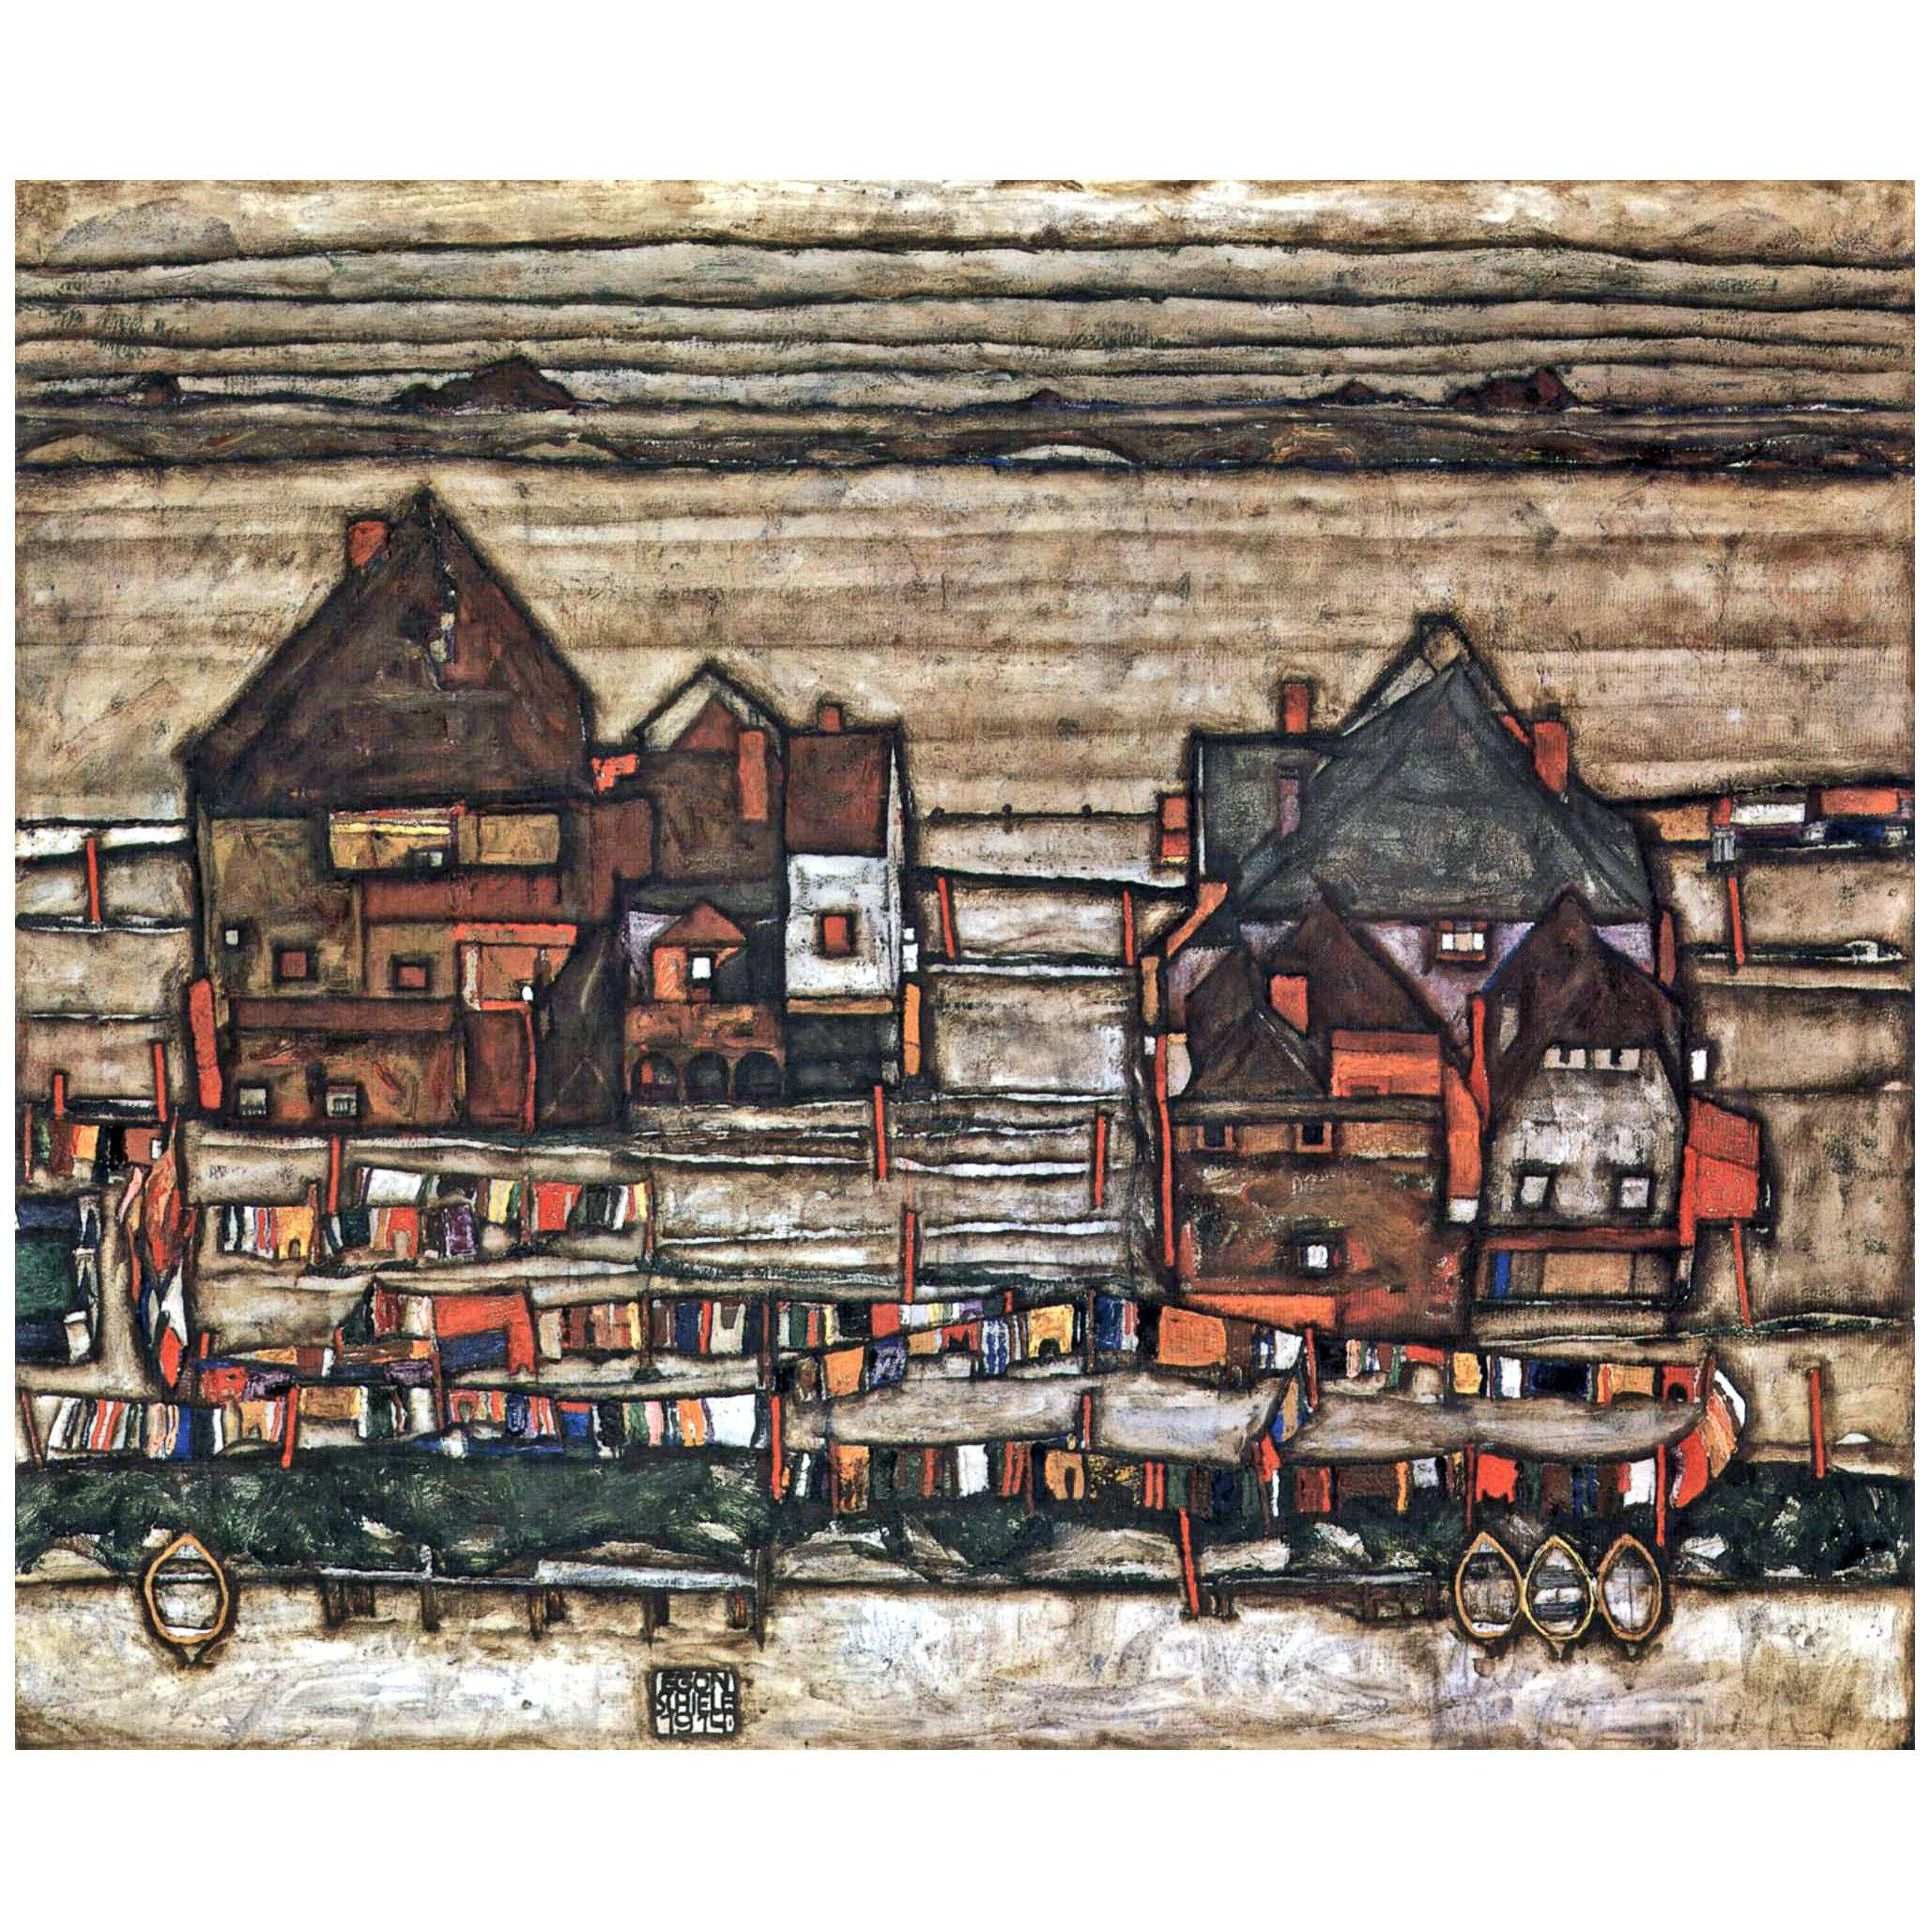 Egon Schiele. Häuser mit bunter Wäsche. Vosrstadt II. 1914. Private collection